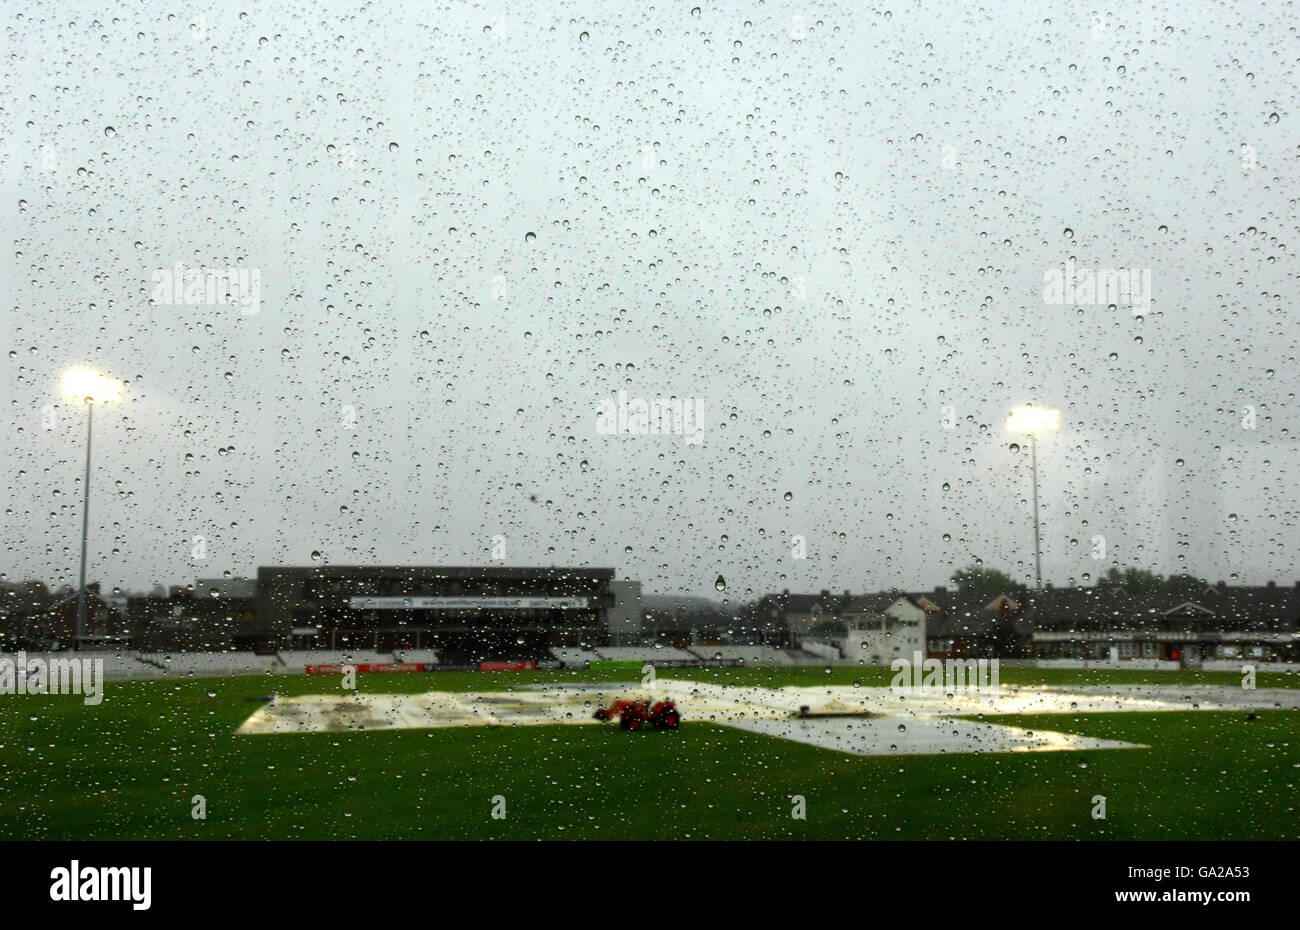 Cricket - Twenty20 Cup - North Division - Derbyshire / Lancashire - terrain de comté.Le match de Derbyshire est retardé en raison de la pluie pendant le match de la coupe Twenty20 de la Division Nord au County Ground, Derby. Banque D'Images